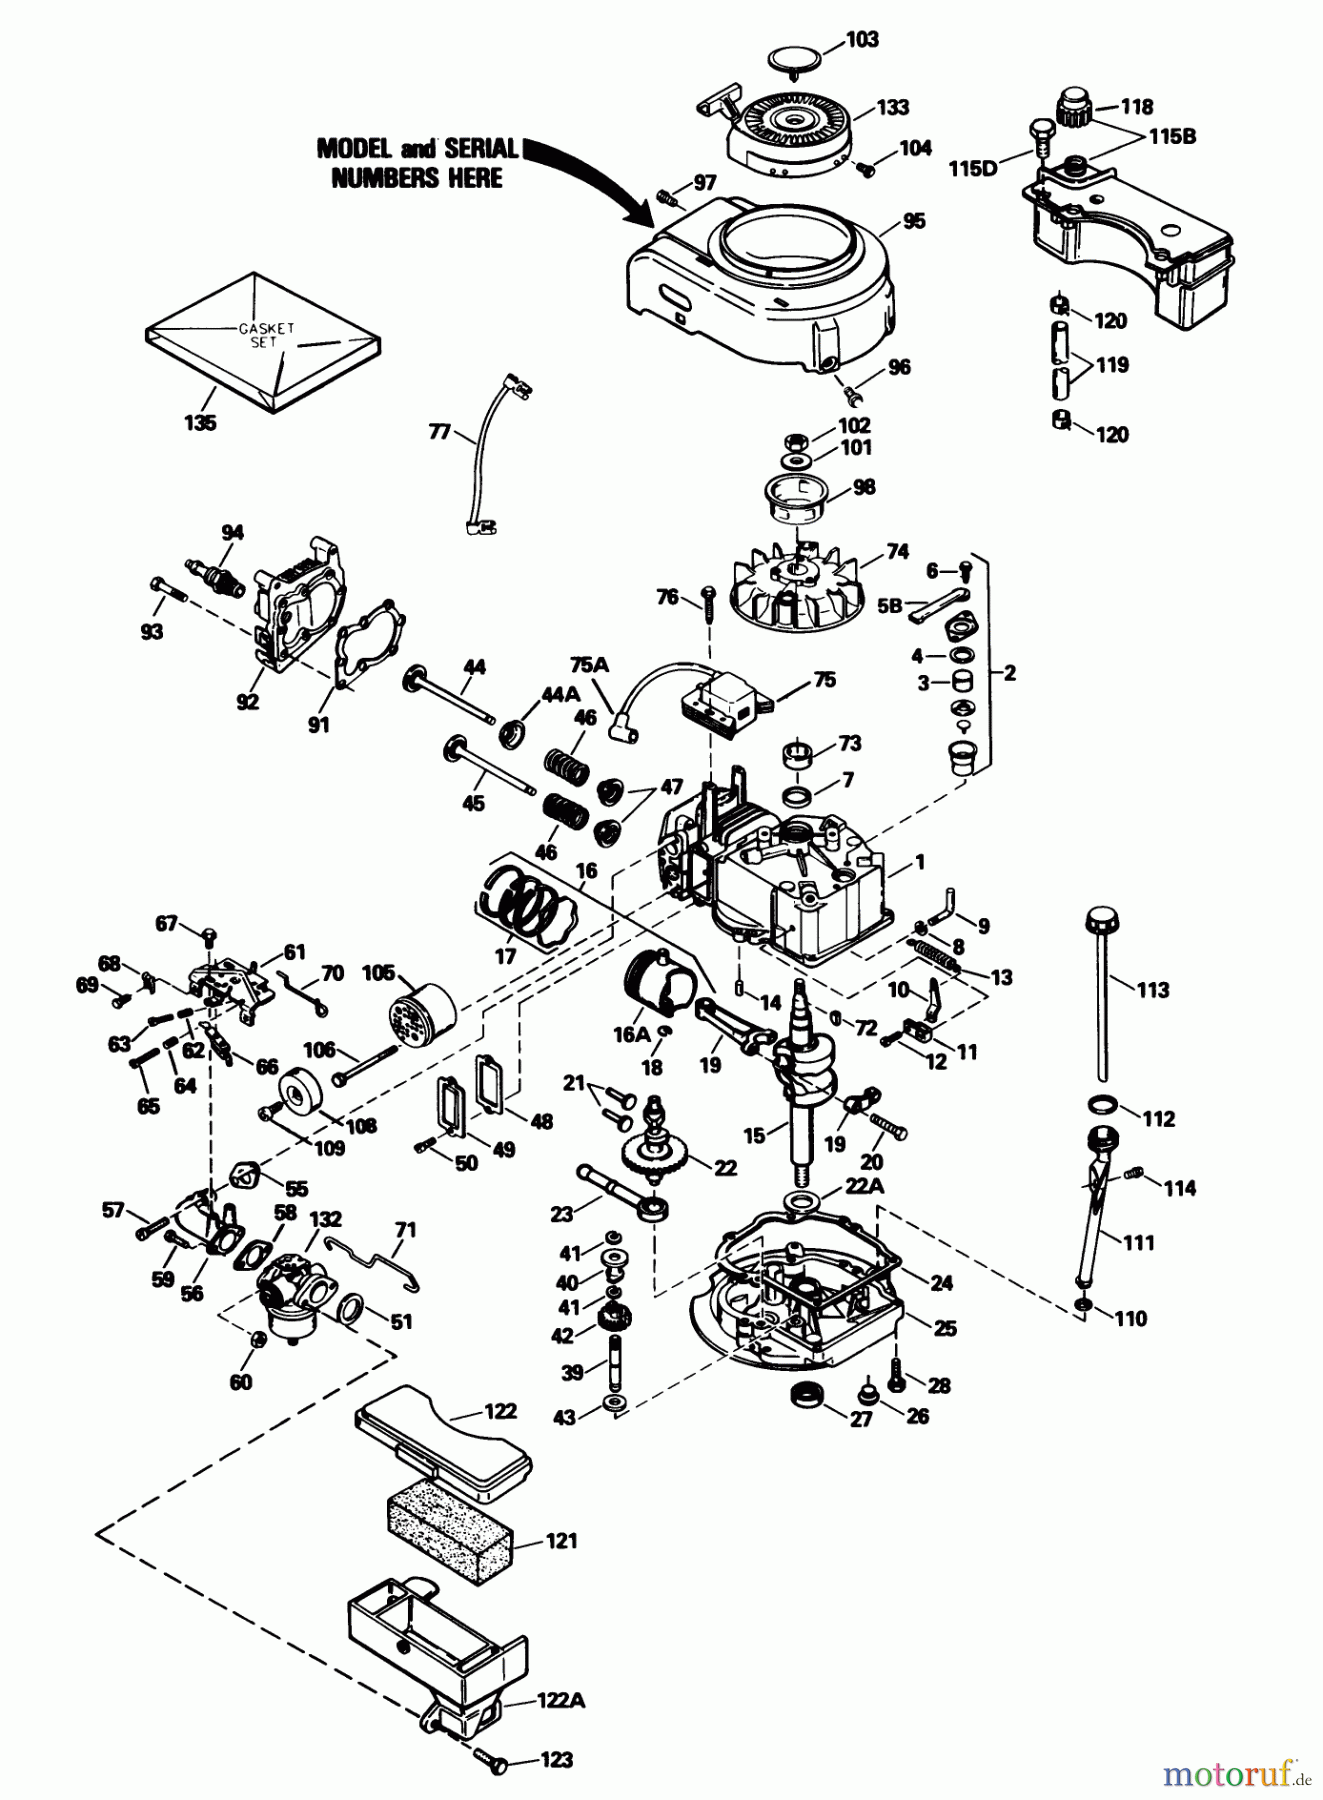  Toro Neu Mowers, Walk-Behind Seite 1 20780C - Toro Lawnmower, 1989 (9000001-9999999) ENGINE TECUMSEH MODEL NO. TVS100-44018B